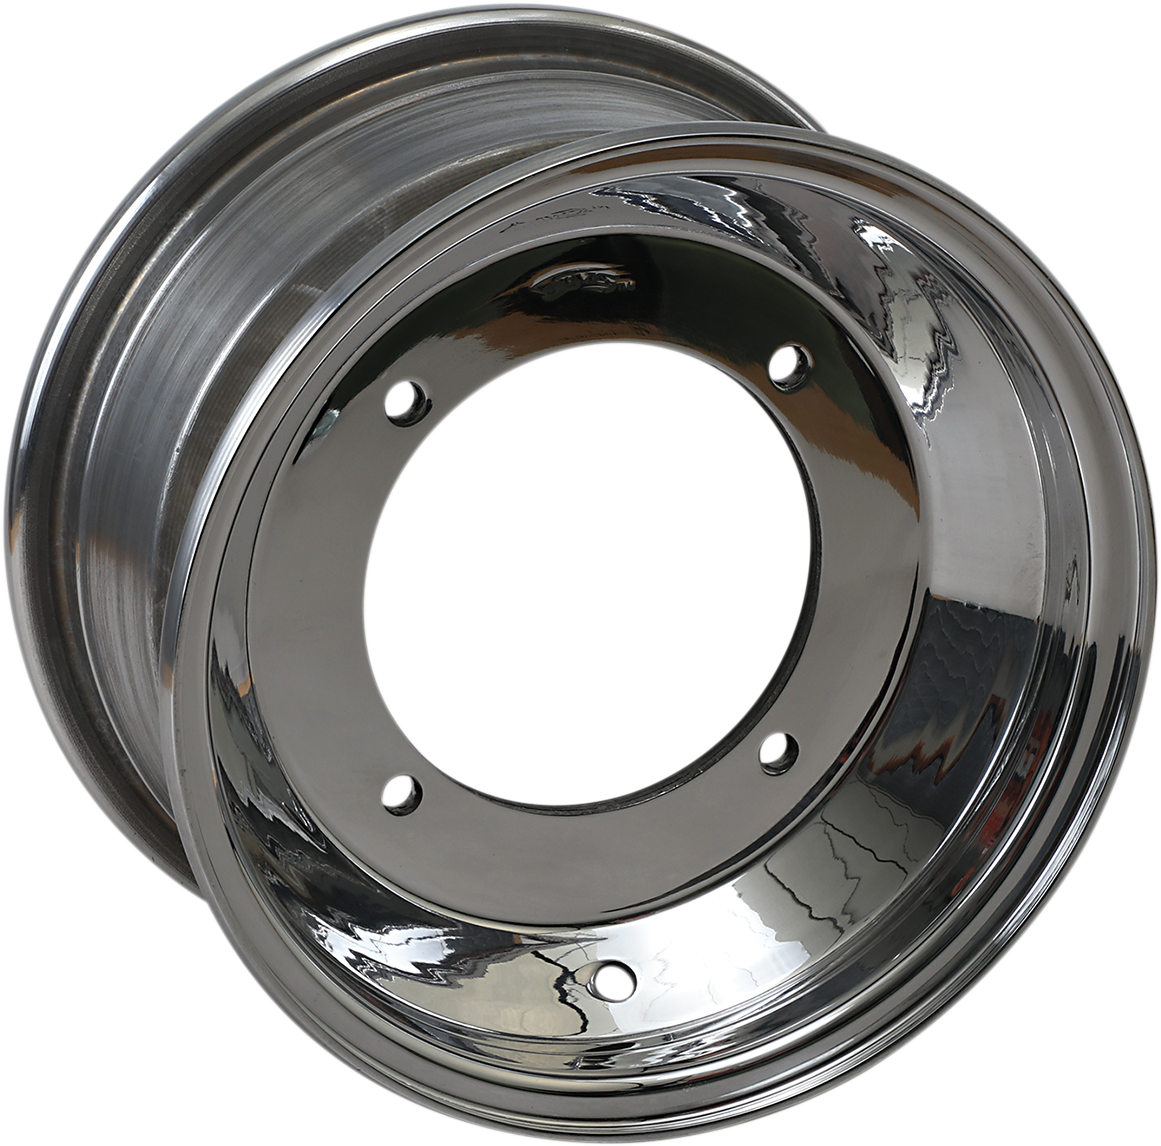 AMS Standard-Lip Spun Wheel - Rear - 10x8 - 4/115 - 3+5 261-108115P3